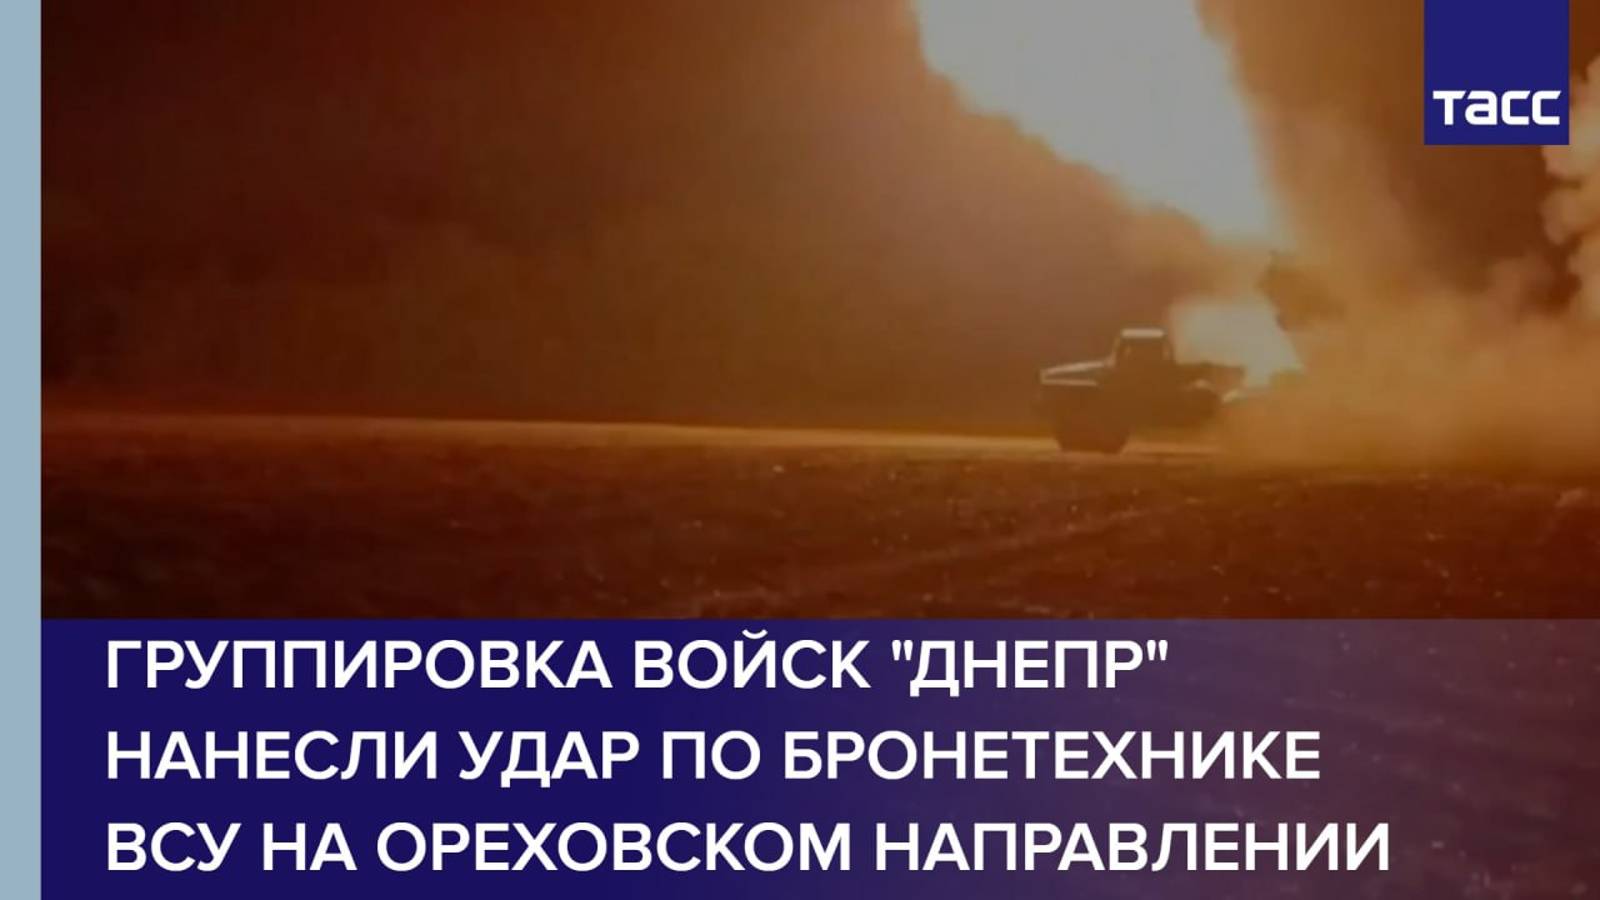 Группировка войск "Днепр" нанесли удар по бронетехнике ВСУ на ореховском направлении